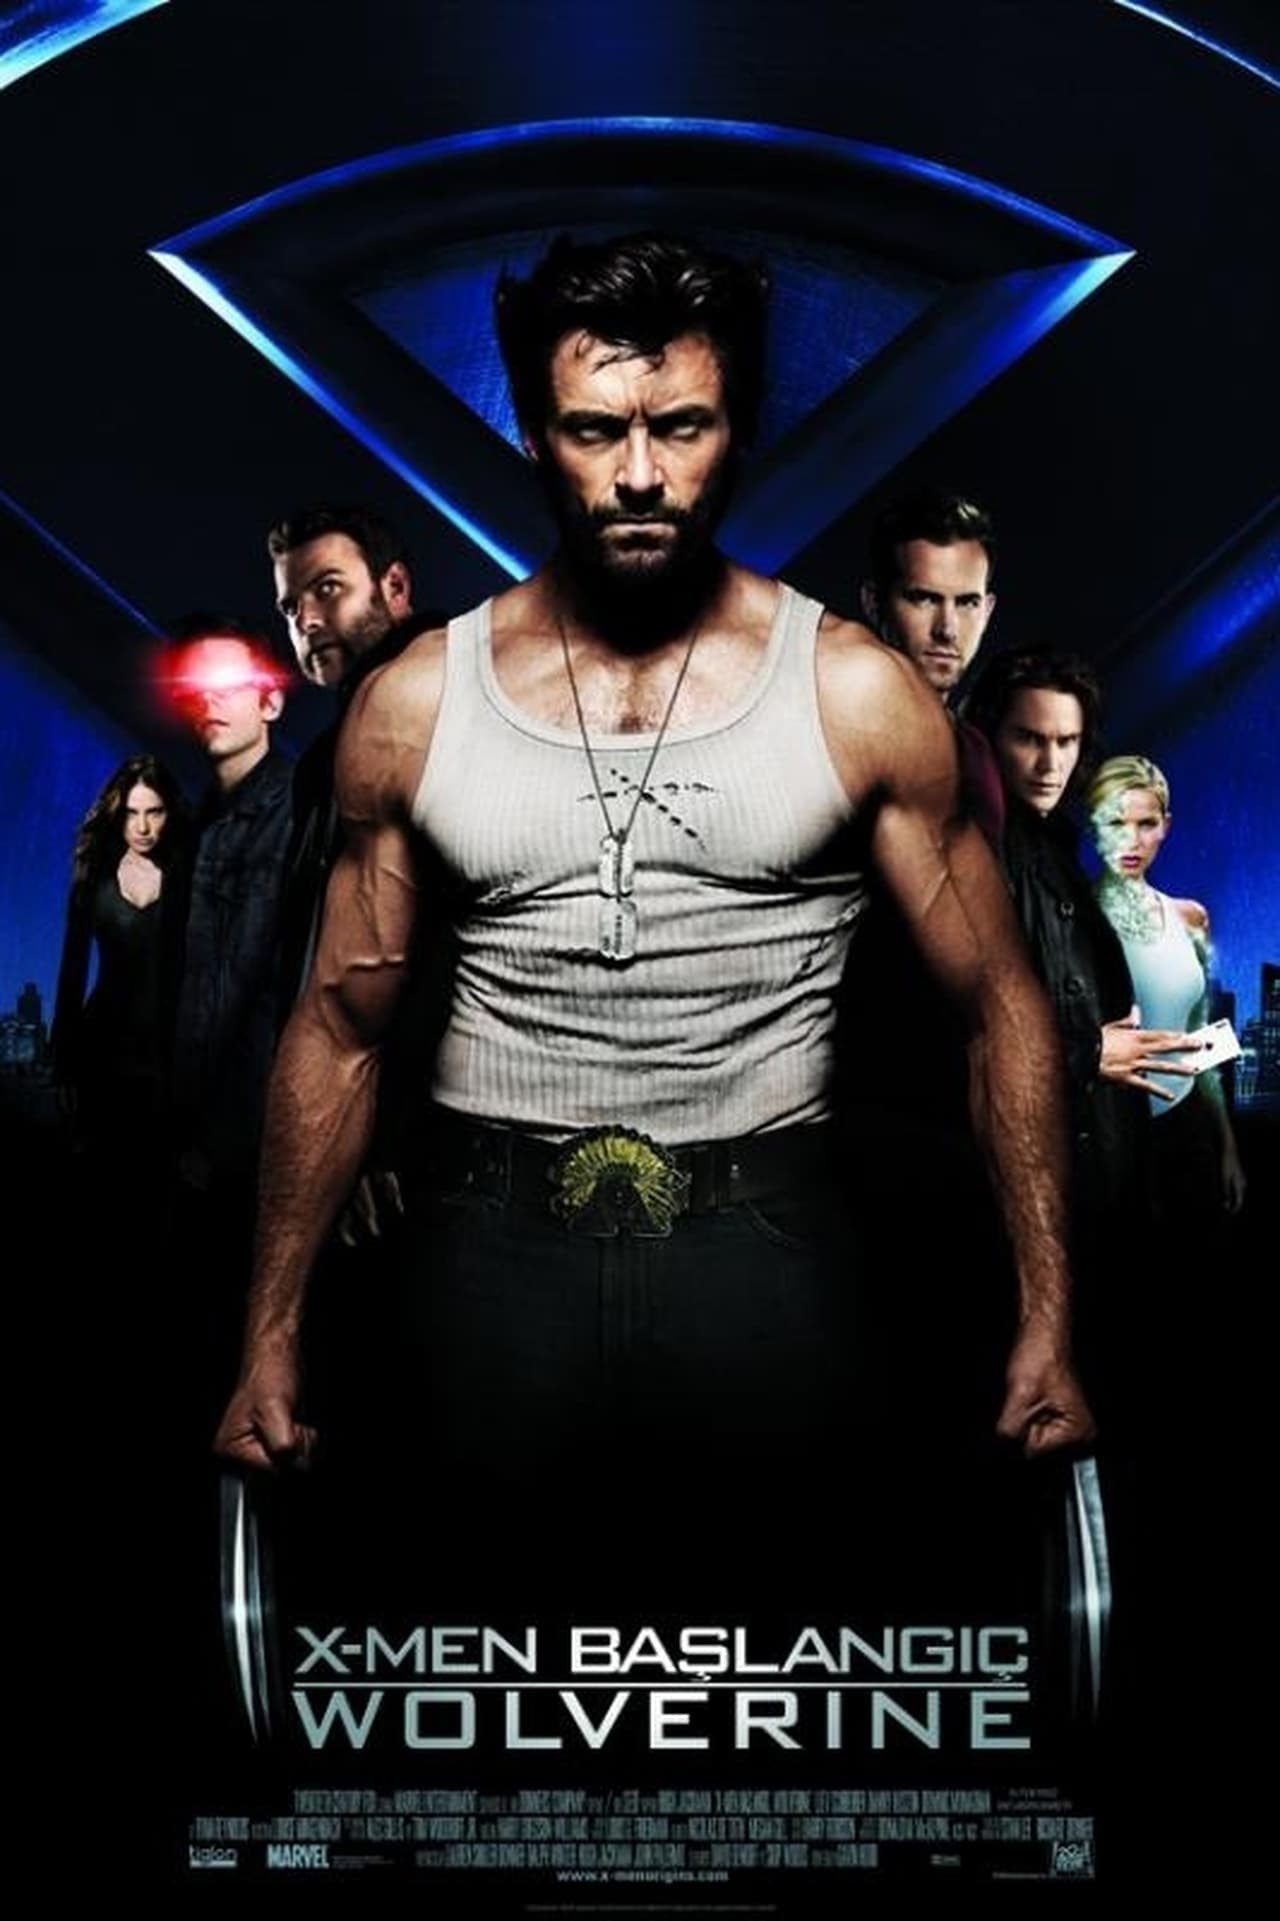 X-Men Origins: Wolverine (2009) 448Kbps 23.976Fps 48Khz 5.1Ch BluRay Turkish Audio TAC